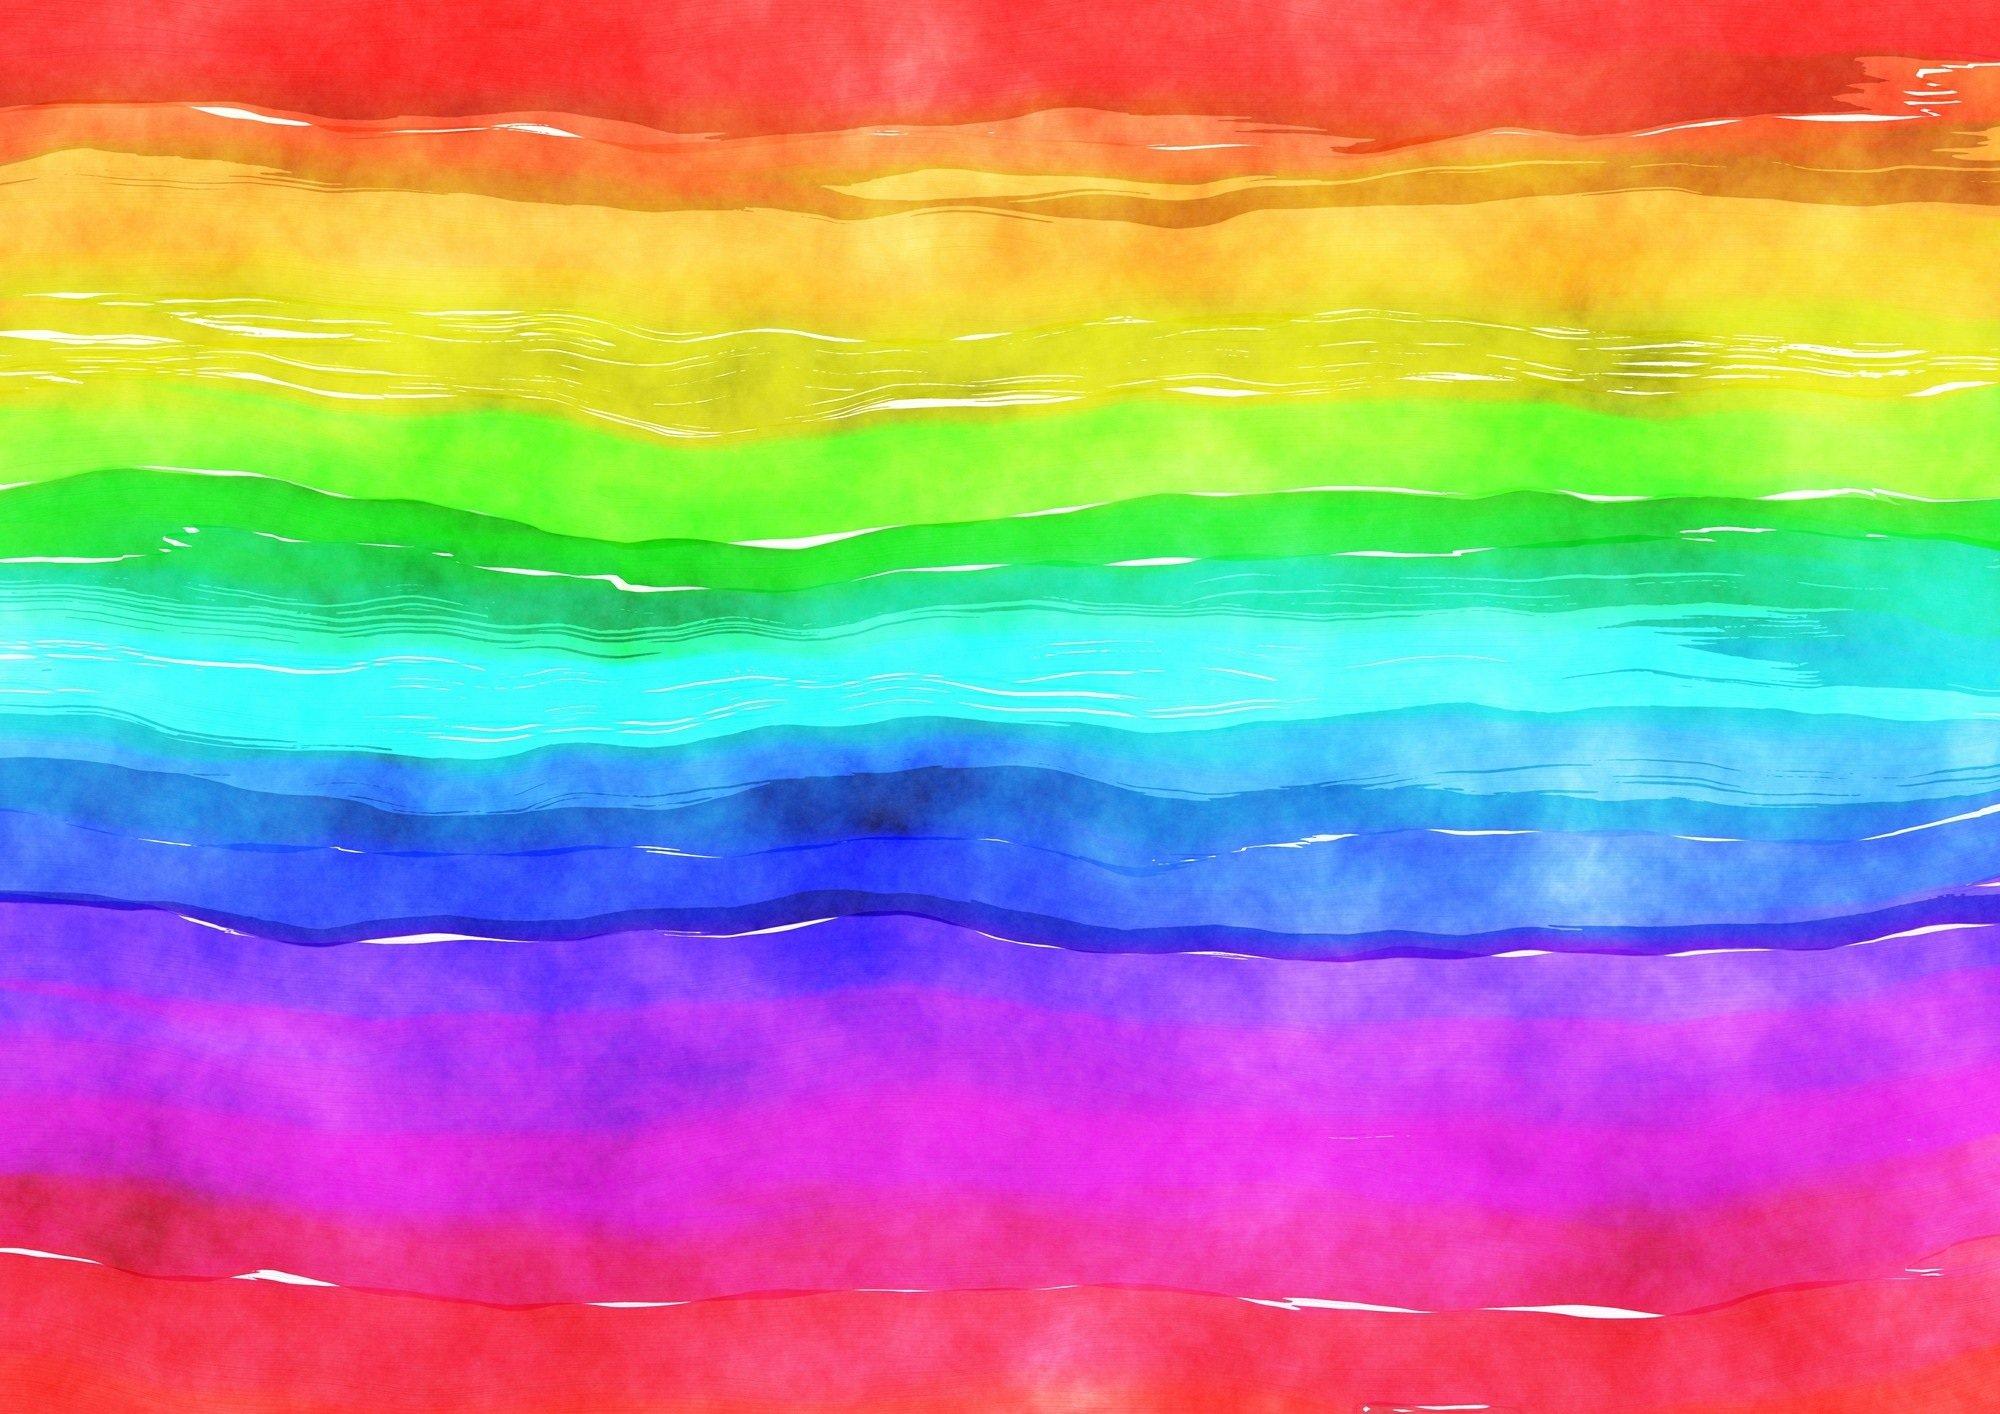 Regenbogen (c) Bild von Prawny auf Pixabay